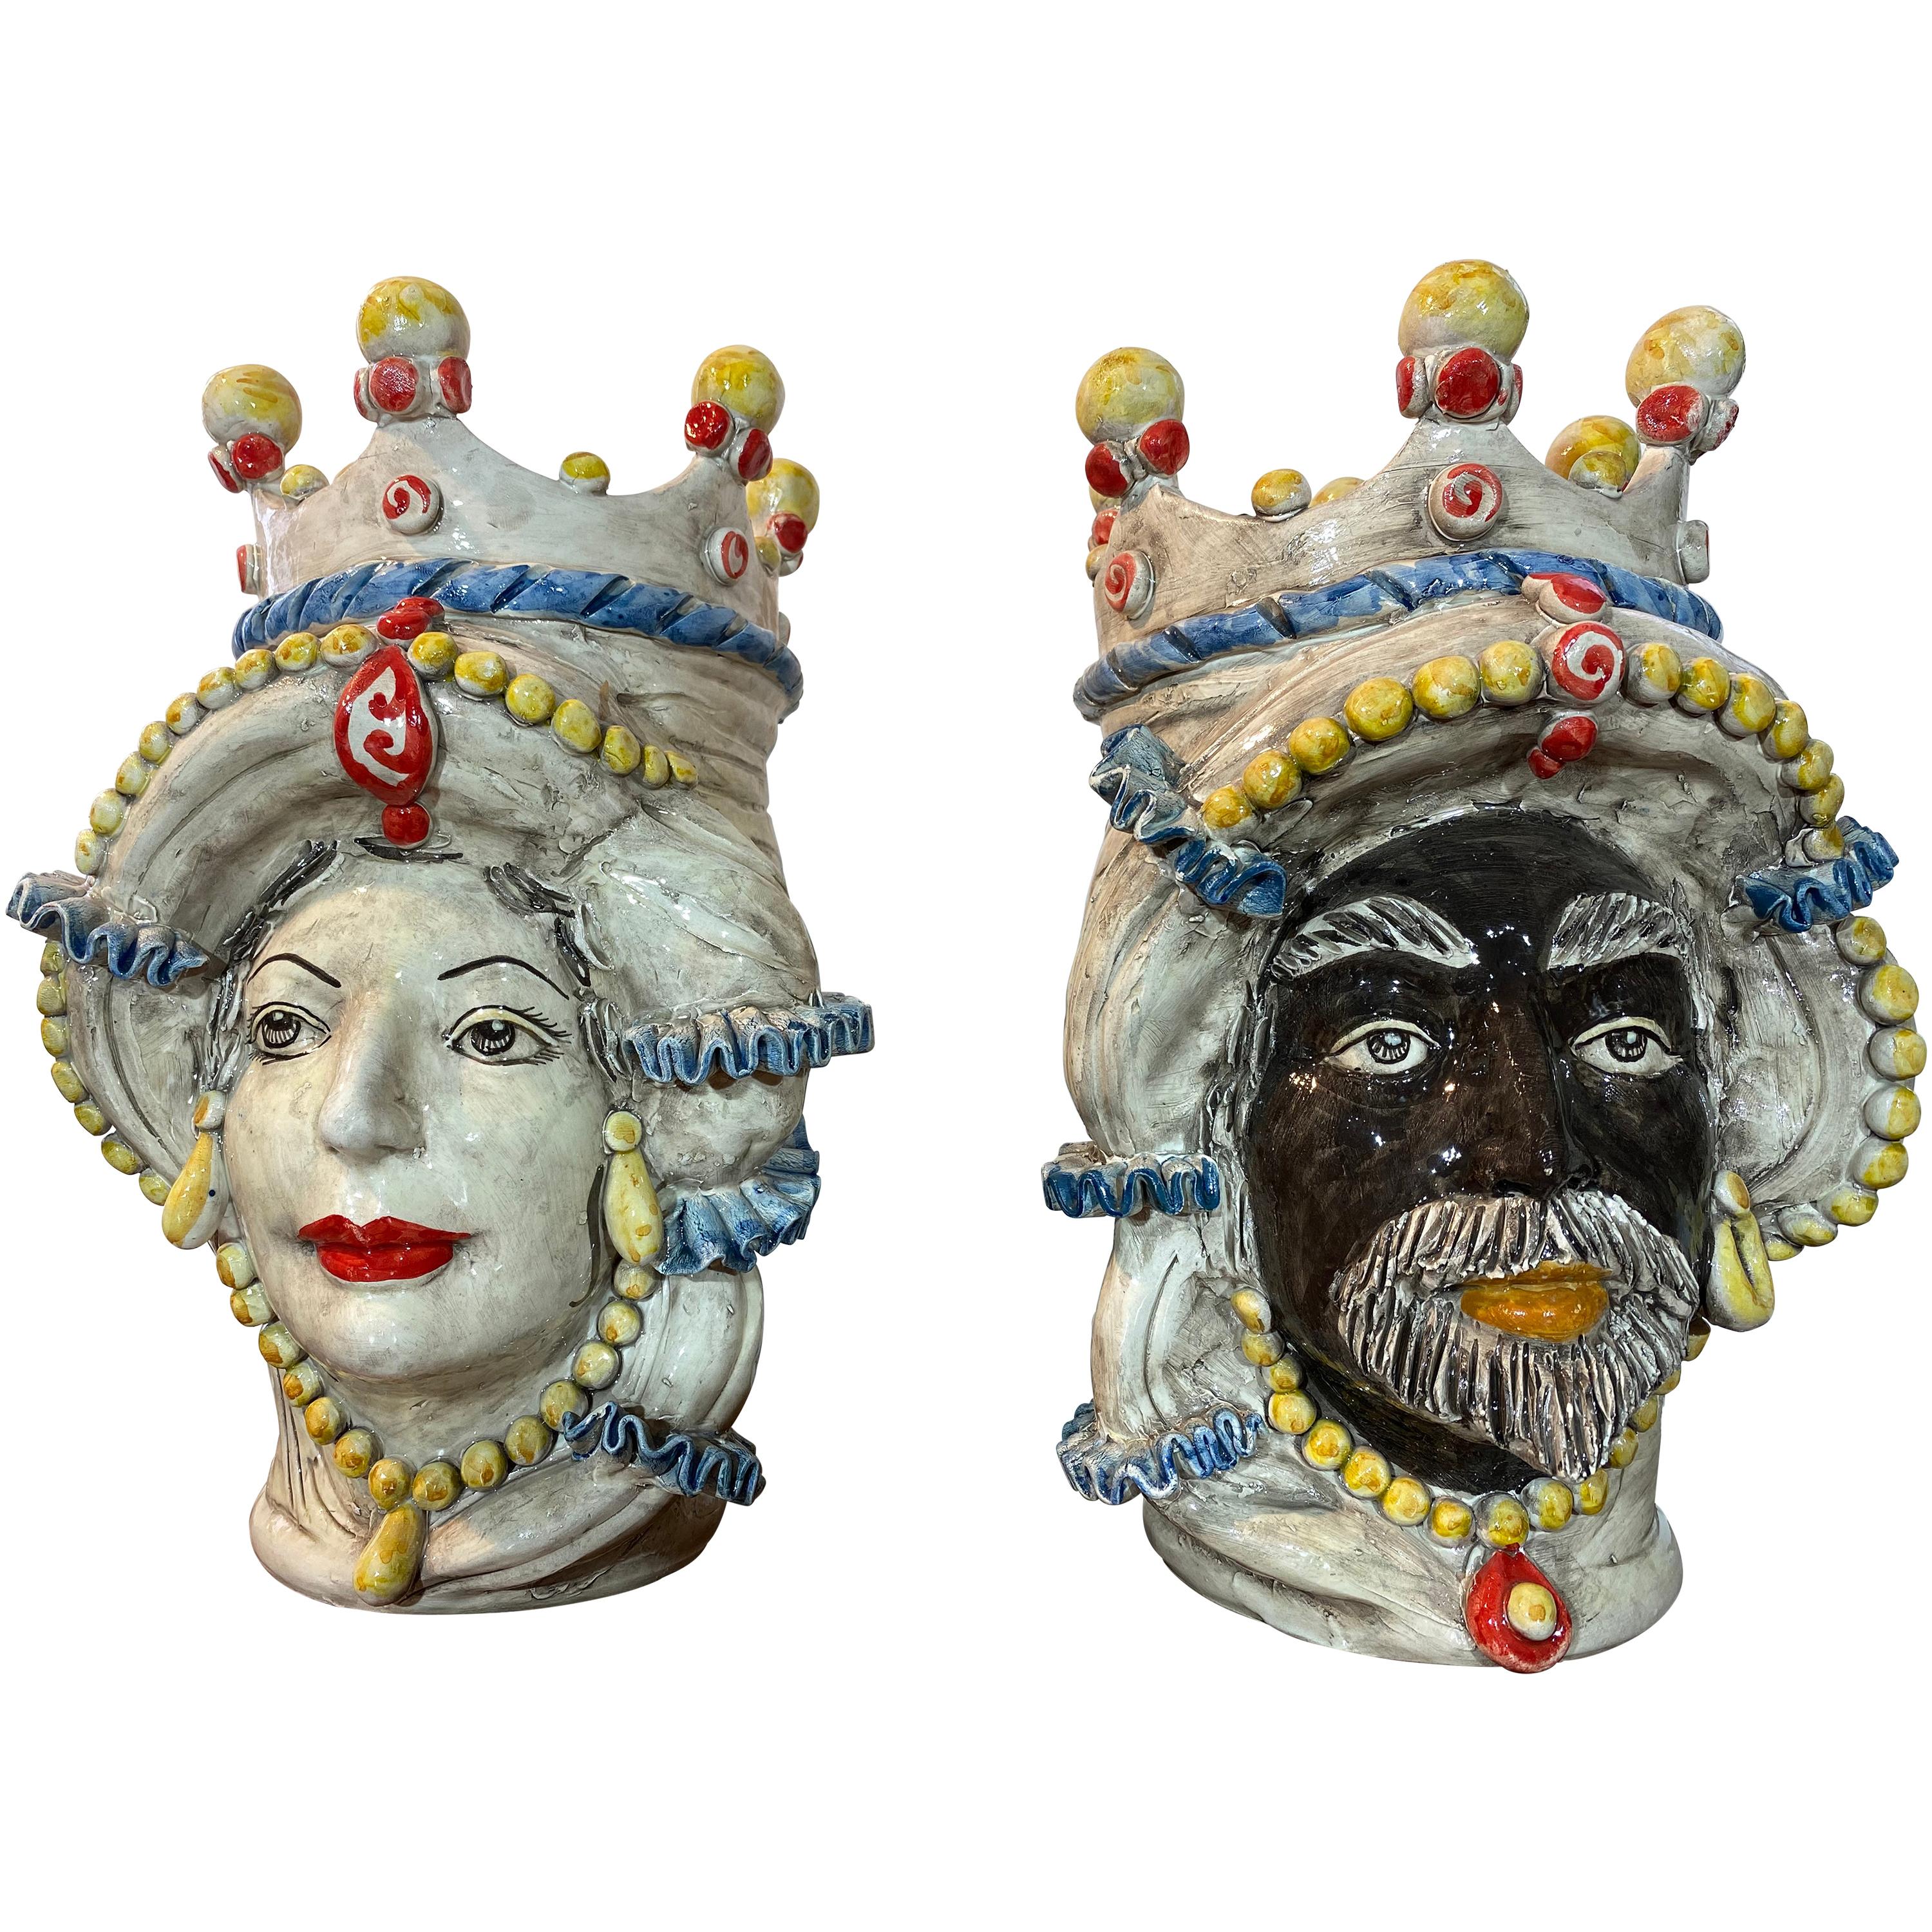 Iconic Pair of Sicilian Ceramic Heads from Caltagirone